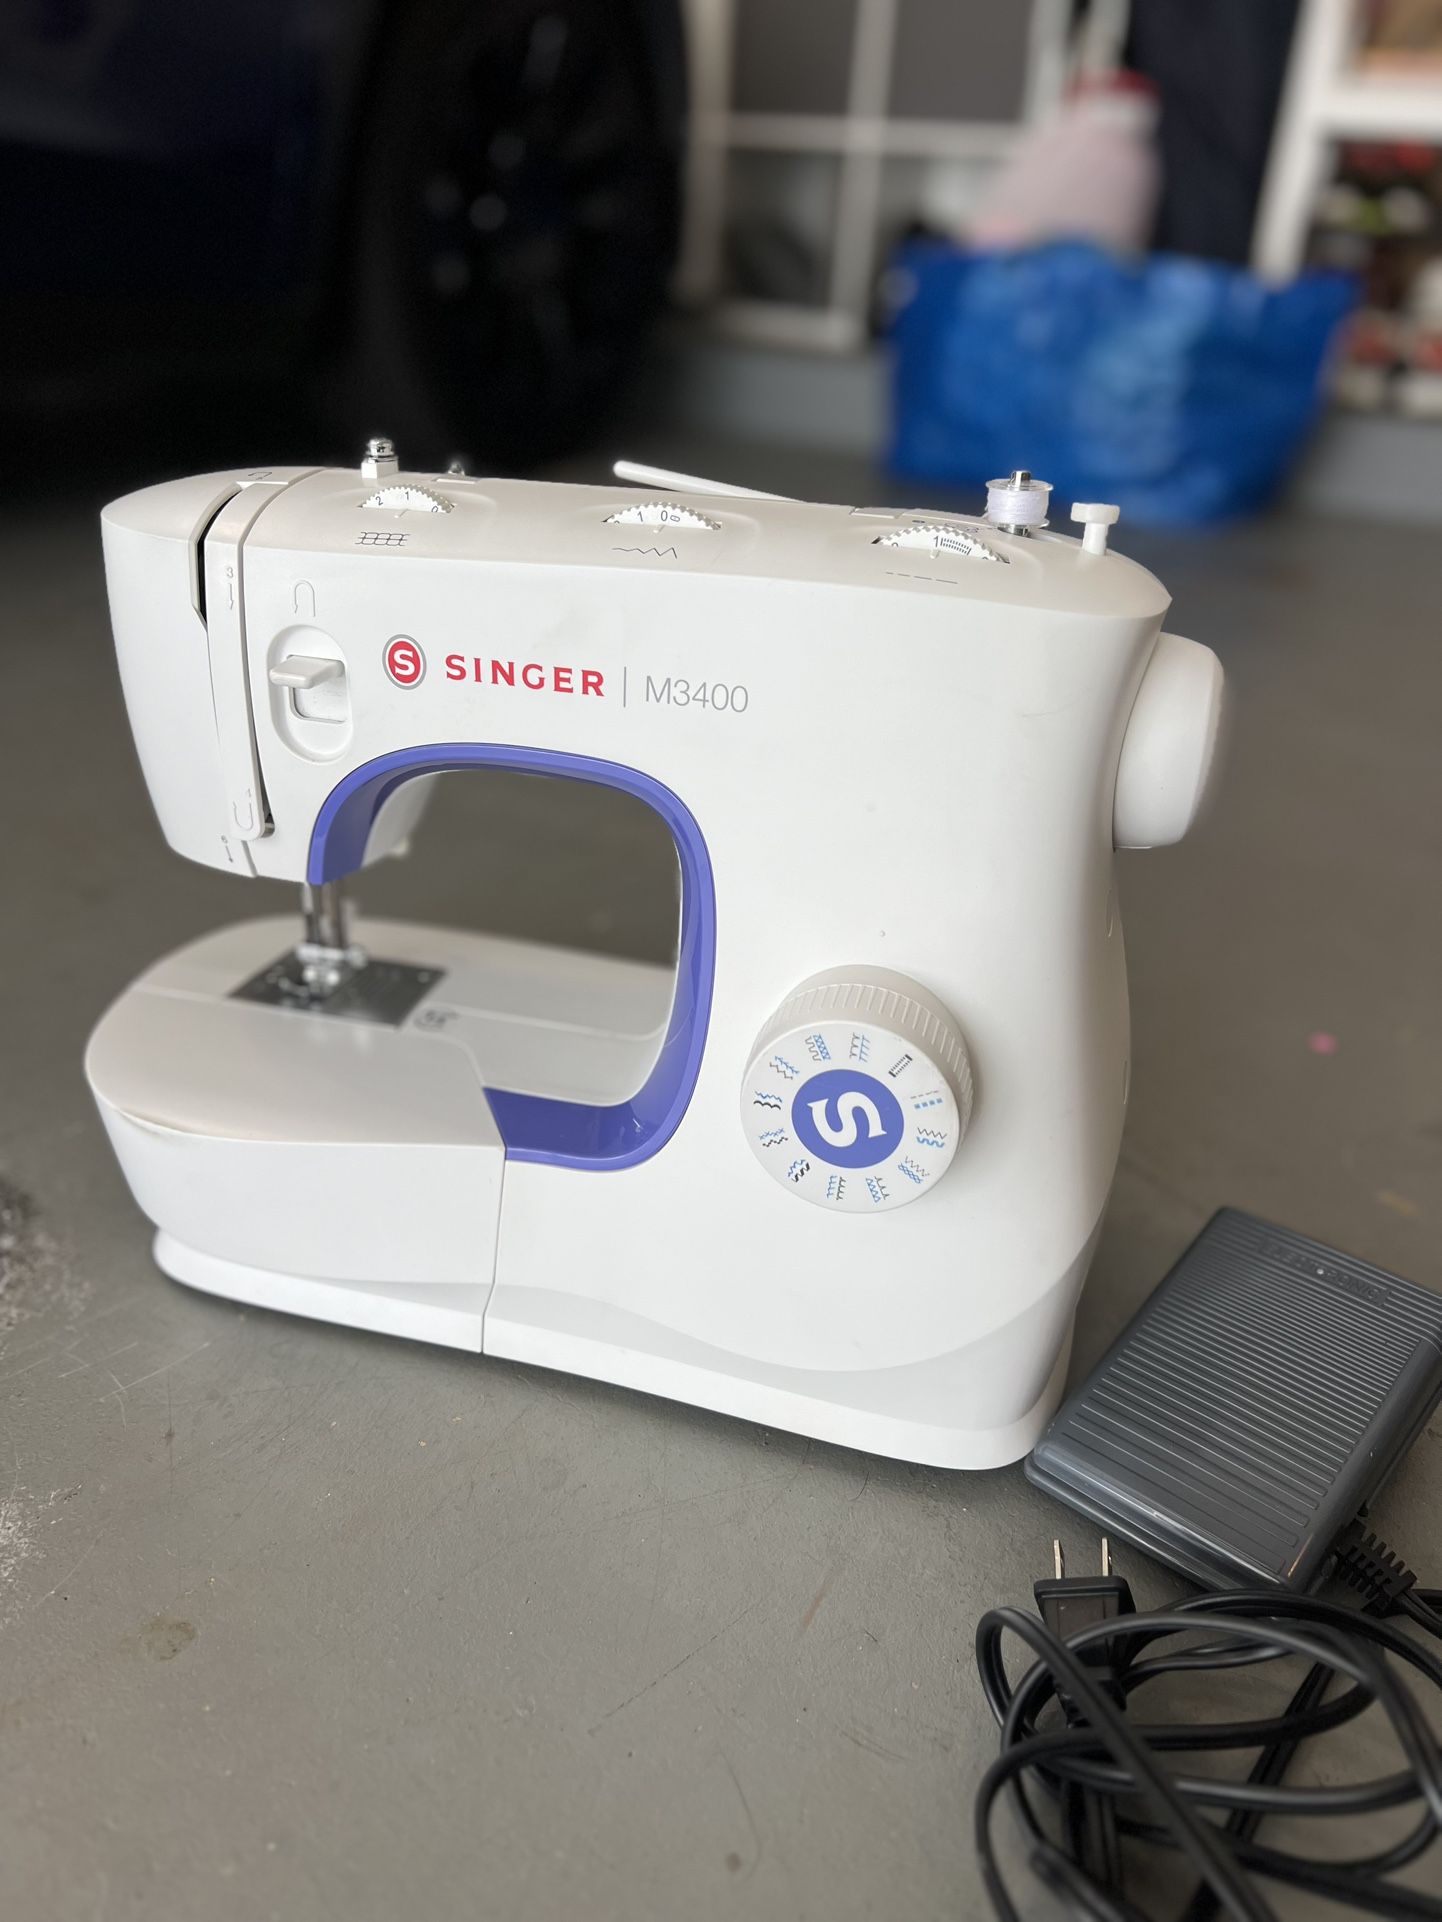 Singer M3400 Sewing Machine